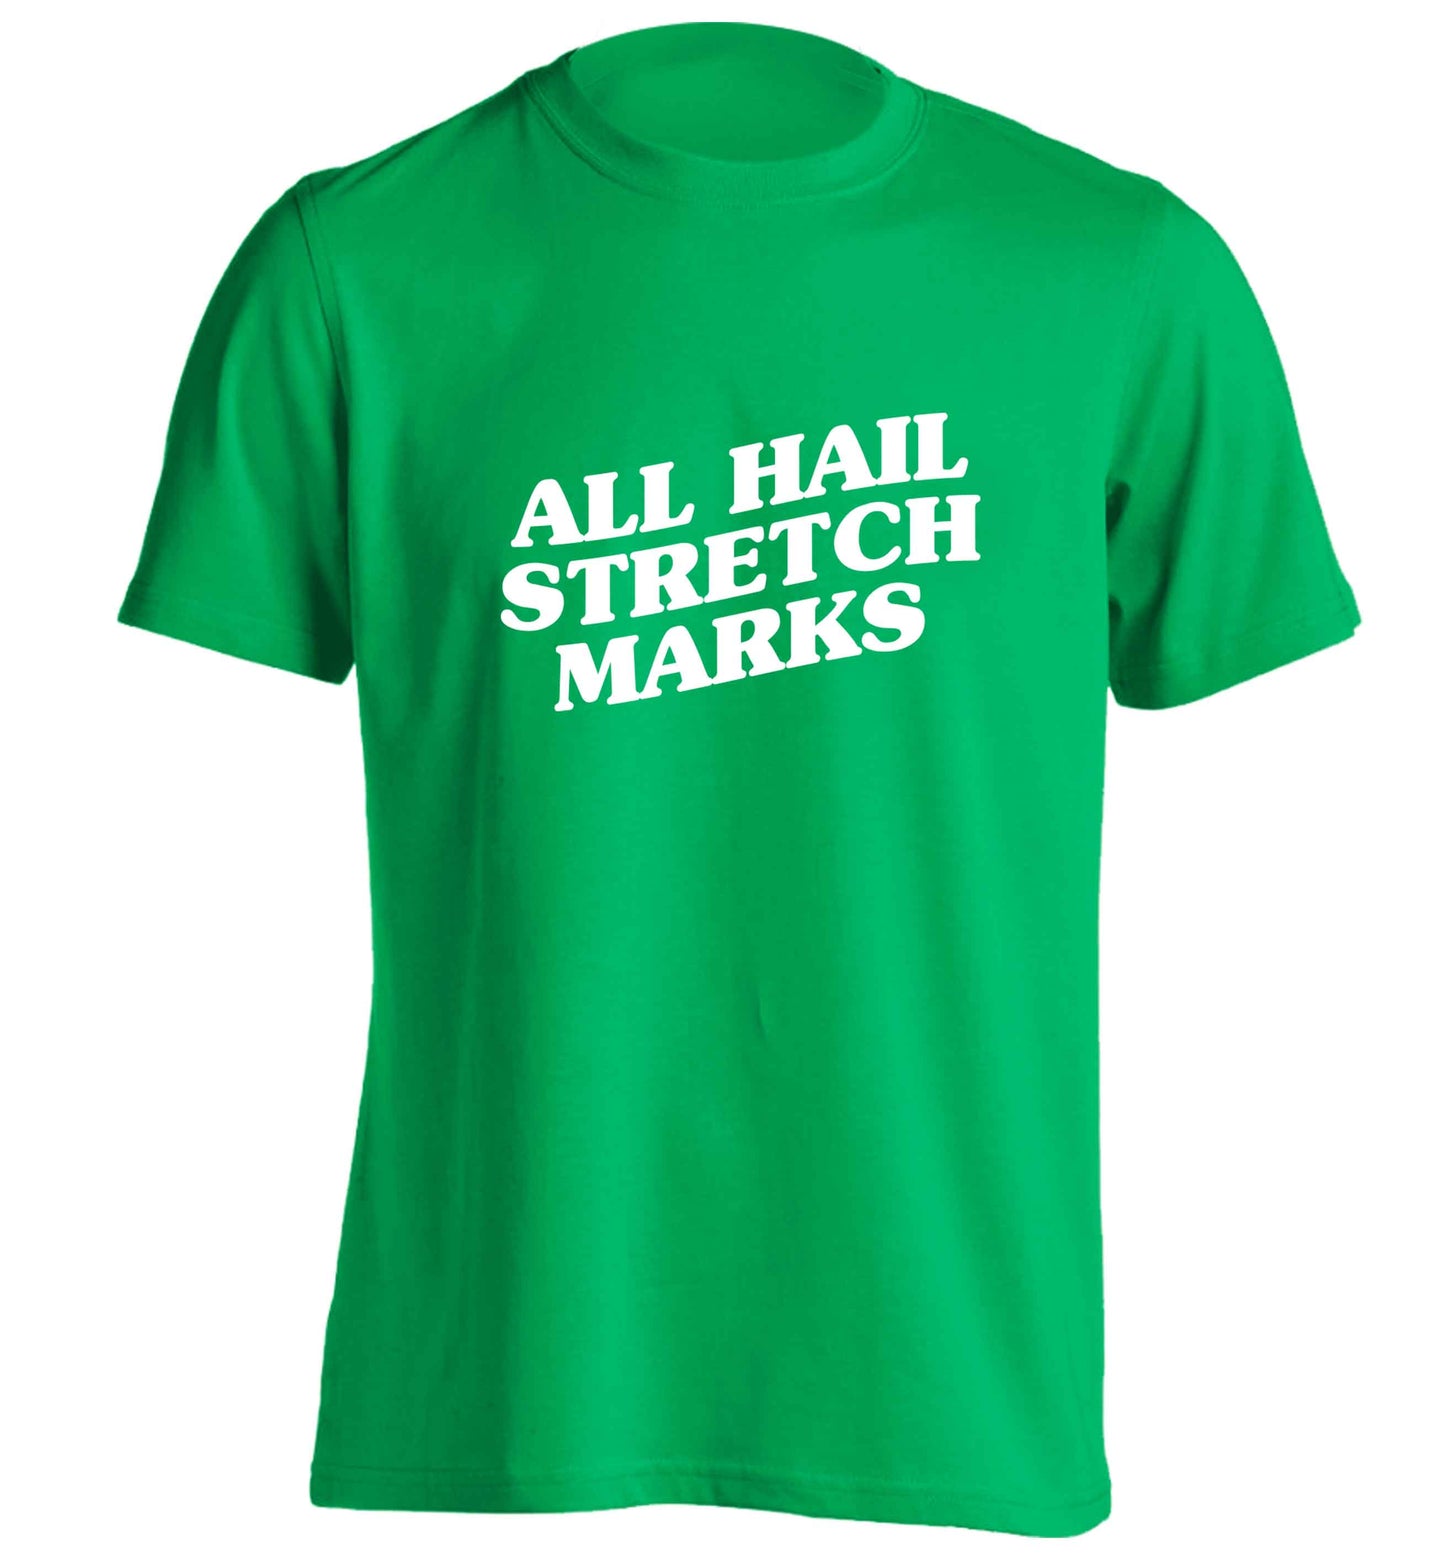 All hail stretch marks adults unisex green Tshirt 2XL